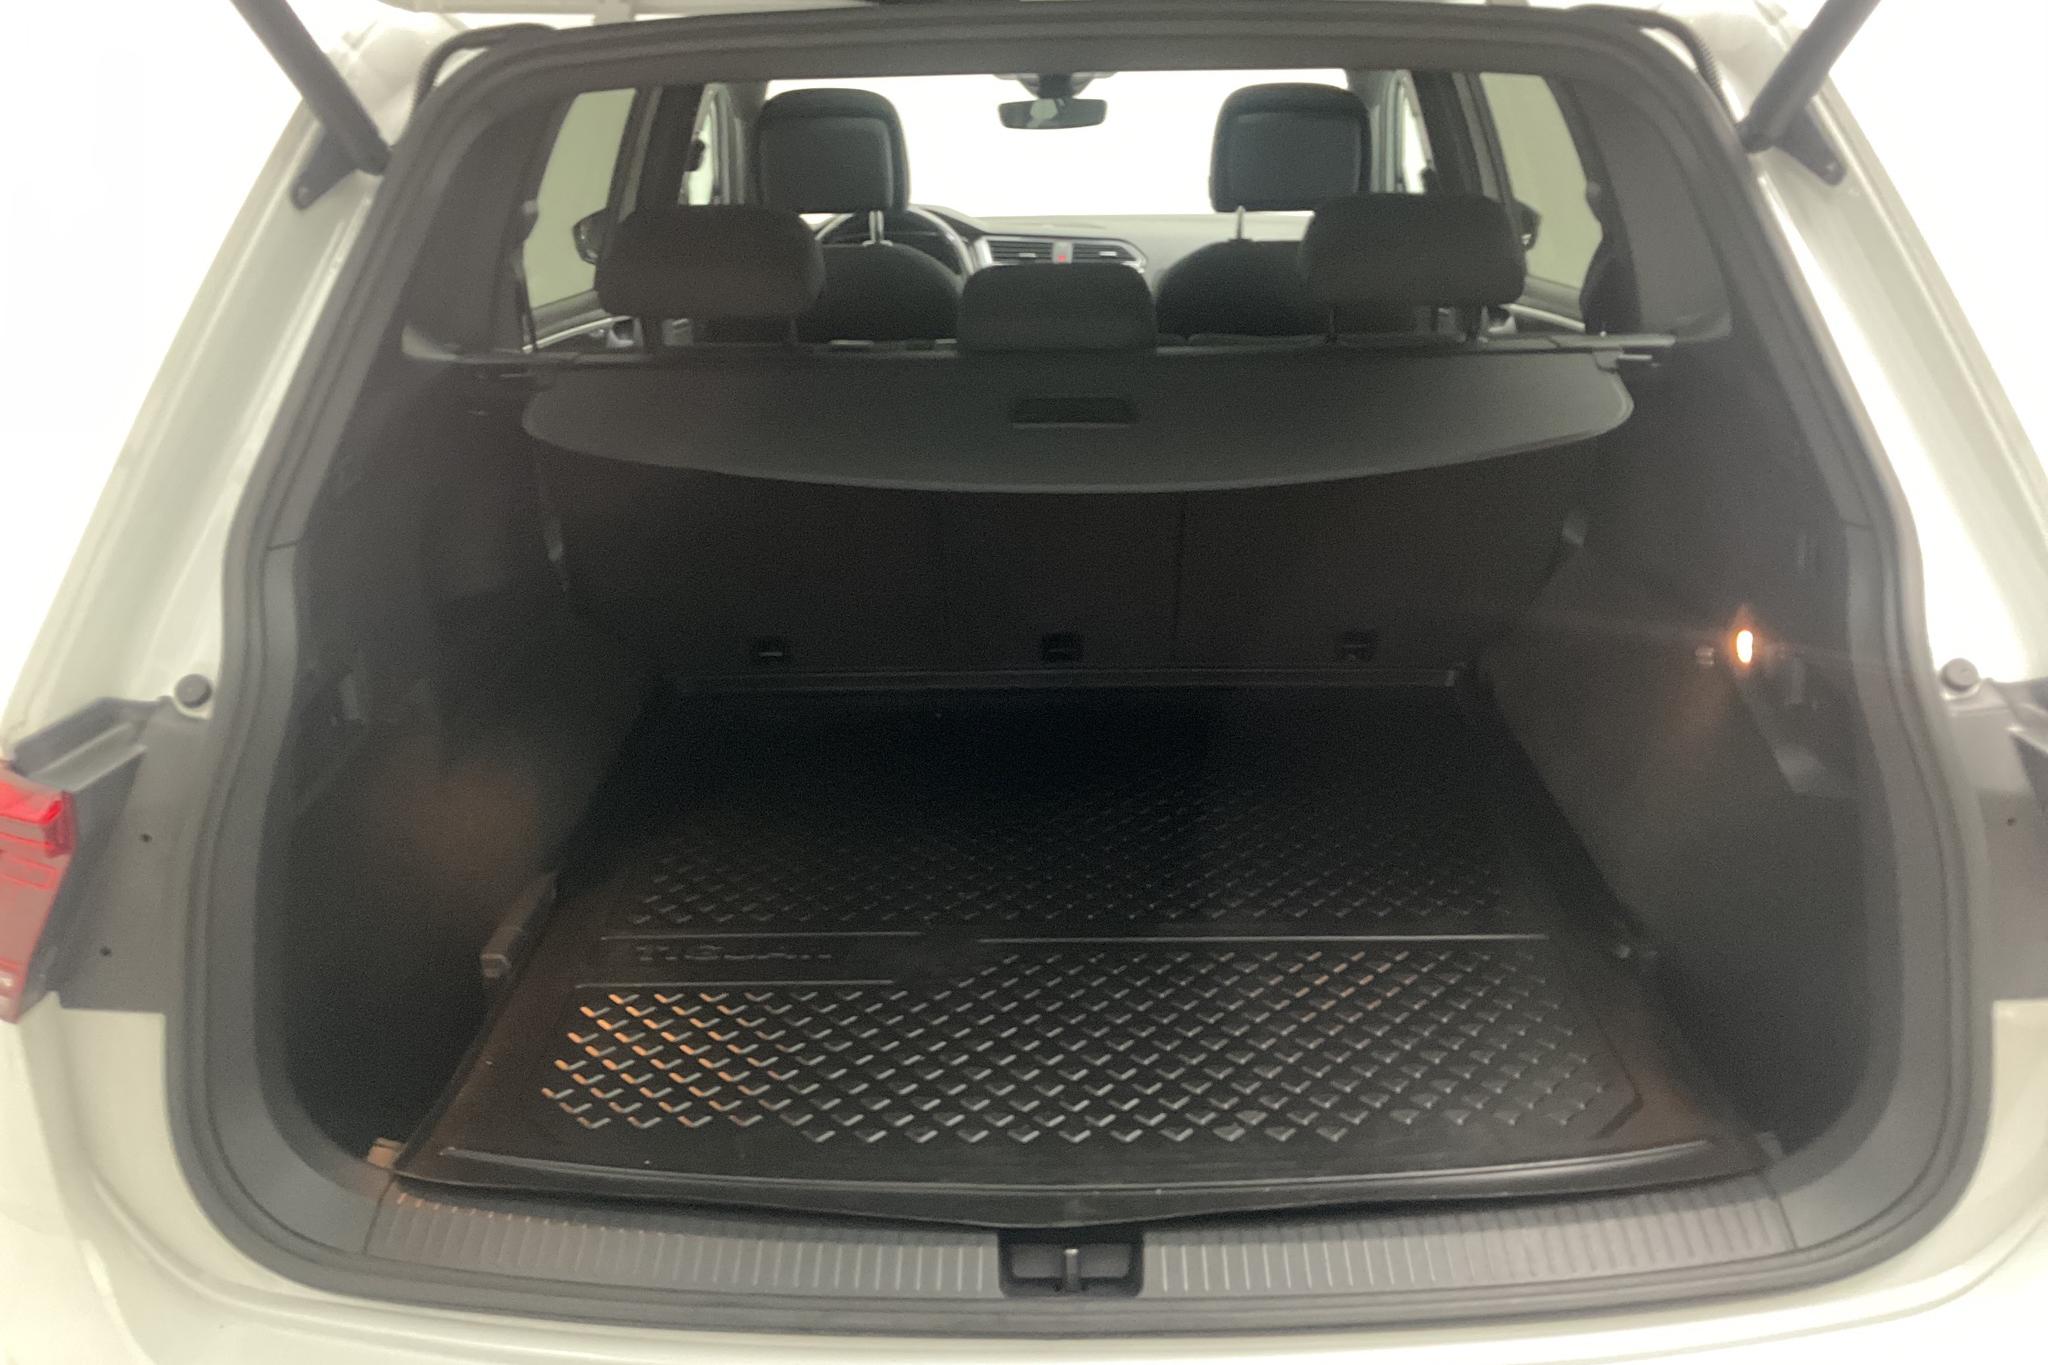 VW Tiguan Allspace 2.0 TDI 4MOTION (190hk) - 128 520 km - Automatic - white - 2020